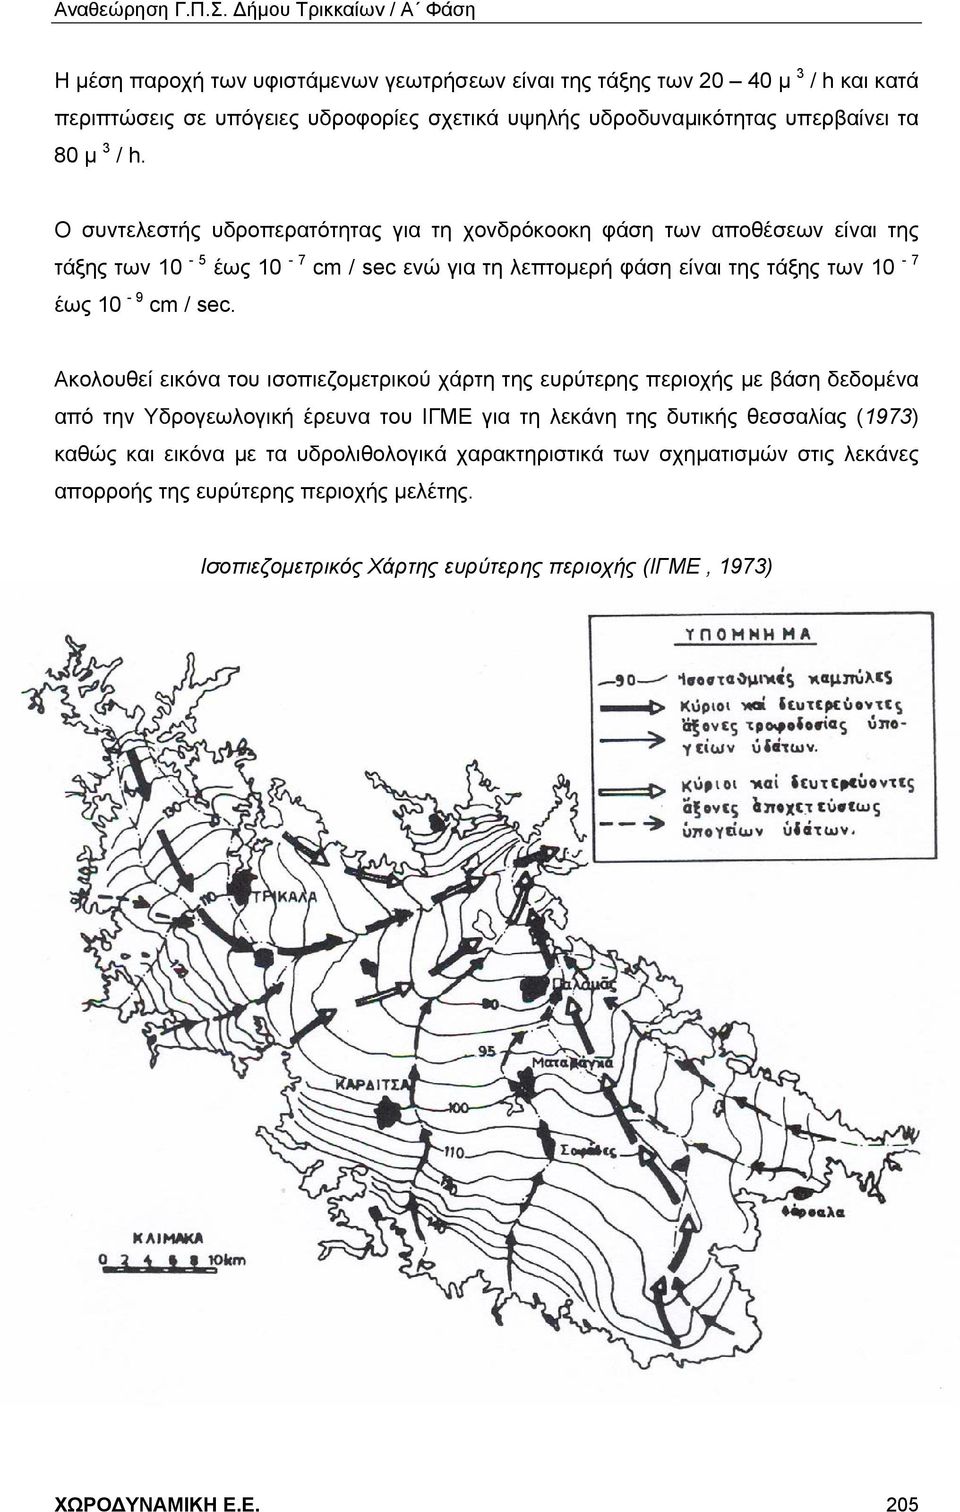 Ακολουθεί εικόνα του ισοπιεζομετρικού χάρτη της ευρύτερης περιοχής με βάση δεδομένα από την Υδρογεωλογική έρευνα του ΙΓΜΕ για τη λεκάνη της δυτικής θεσσαλίας (1973) καθώς και